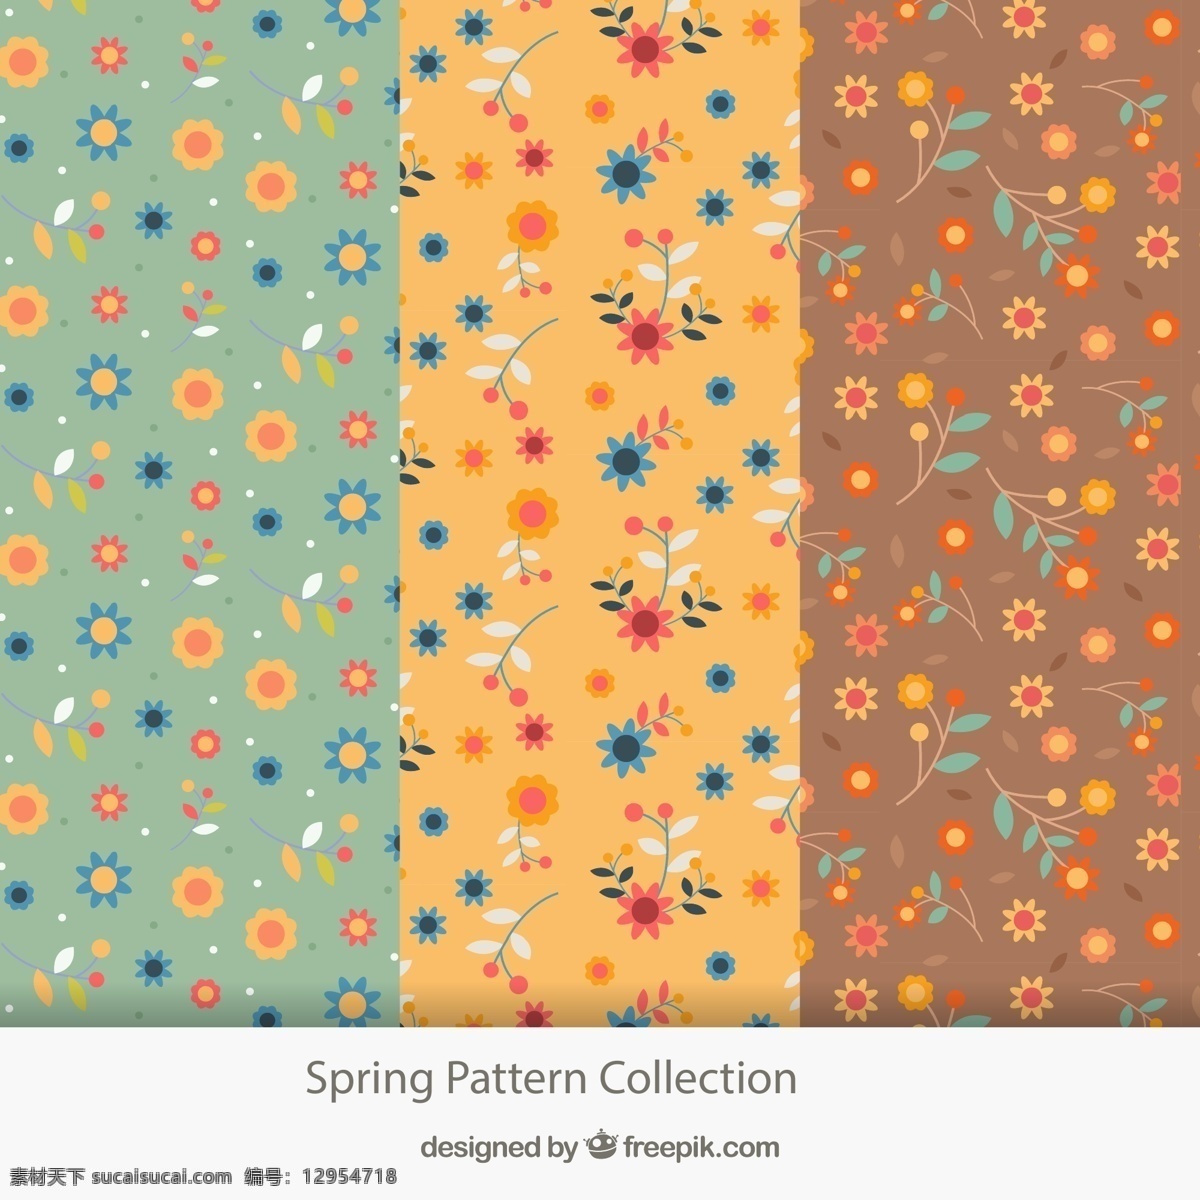 春季 花朵 无缝 背景图片 彩色 无缝背景 矢量图